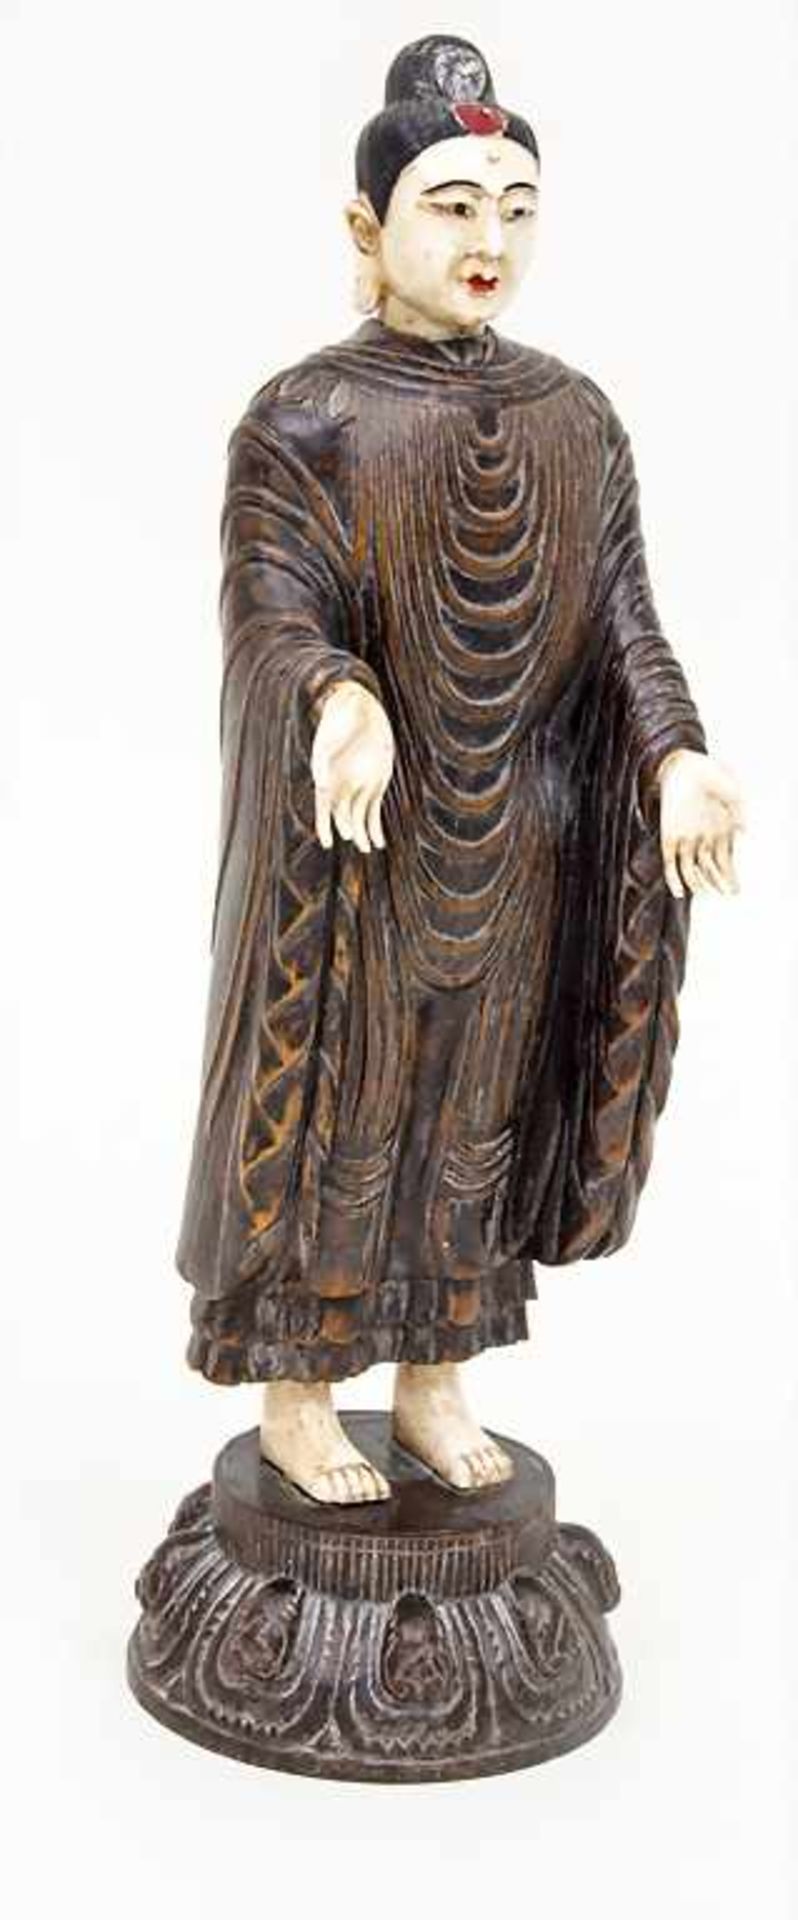 Stehender Buddha / A standing Buddha, Japan, 19. Jh. Material: Holz und Elfenbein,Epoche: wohl Edo- - Bild 2 aus 4